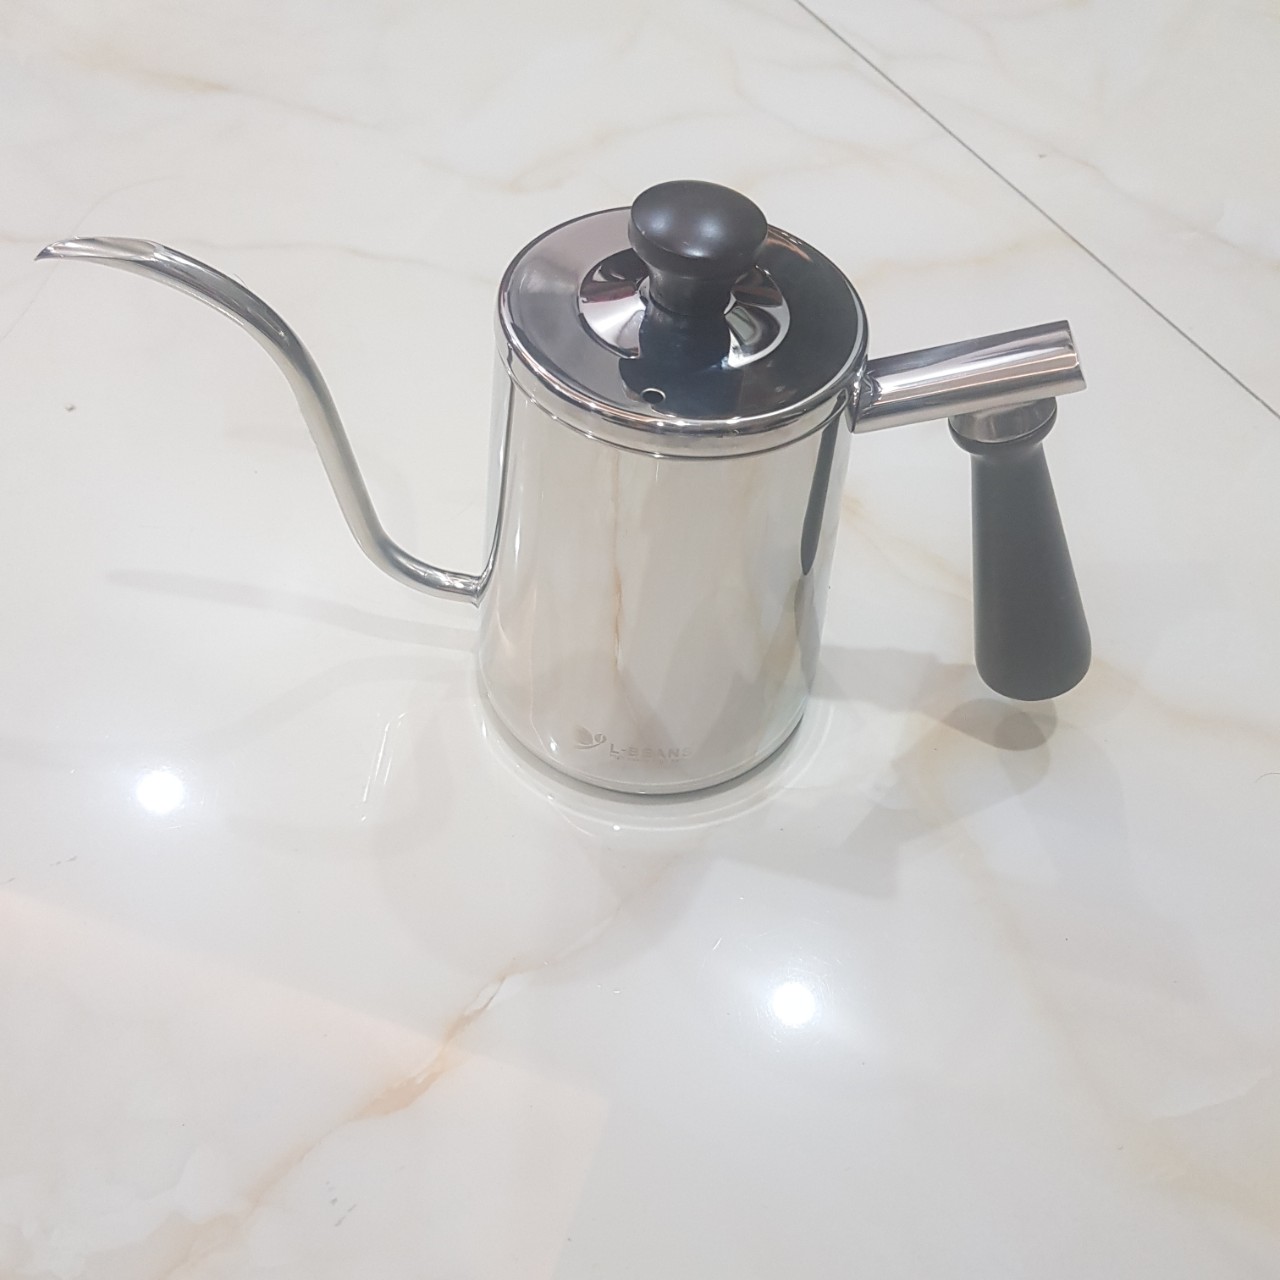 Ấm drip rót cà phê cổ ngỗng chuyên nghiệp L-Beans SD-201901 - Hàng Nhập Khẩu